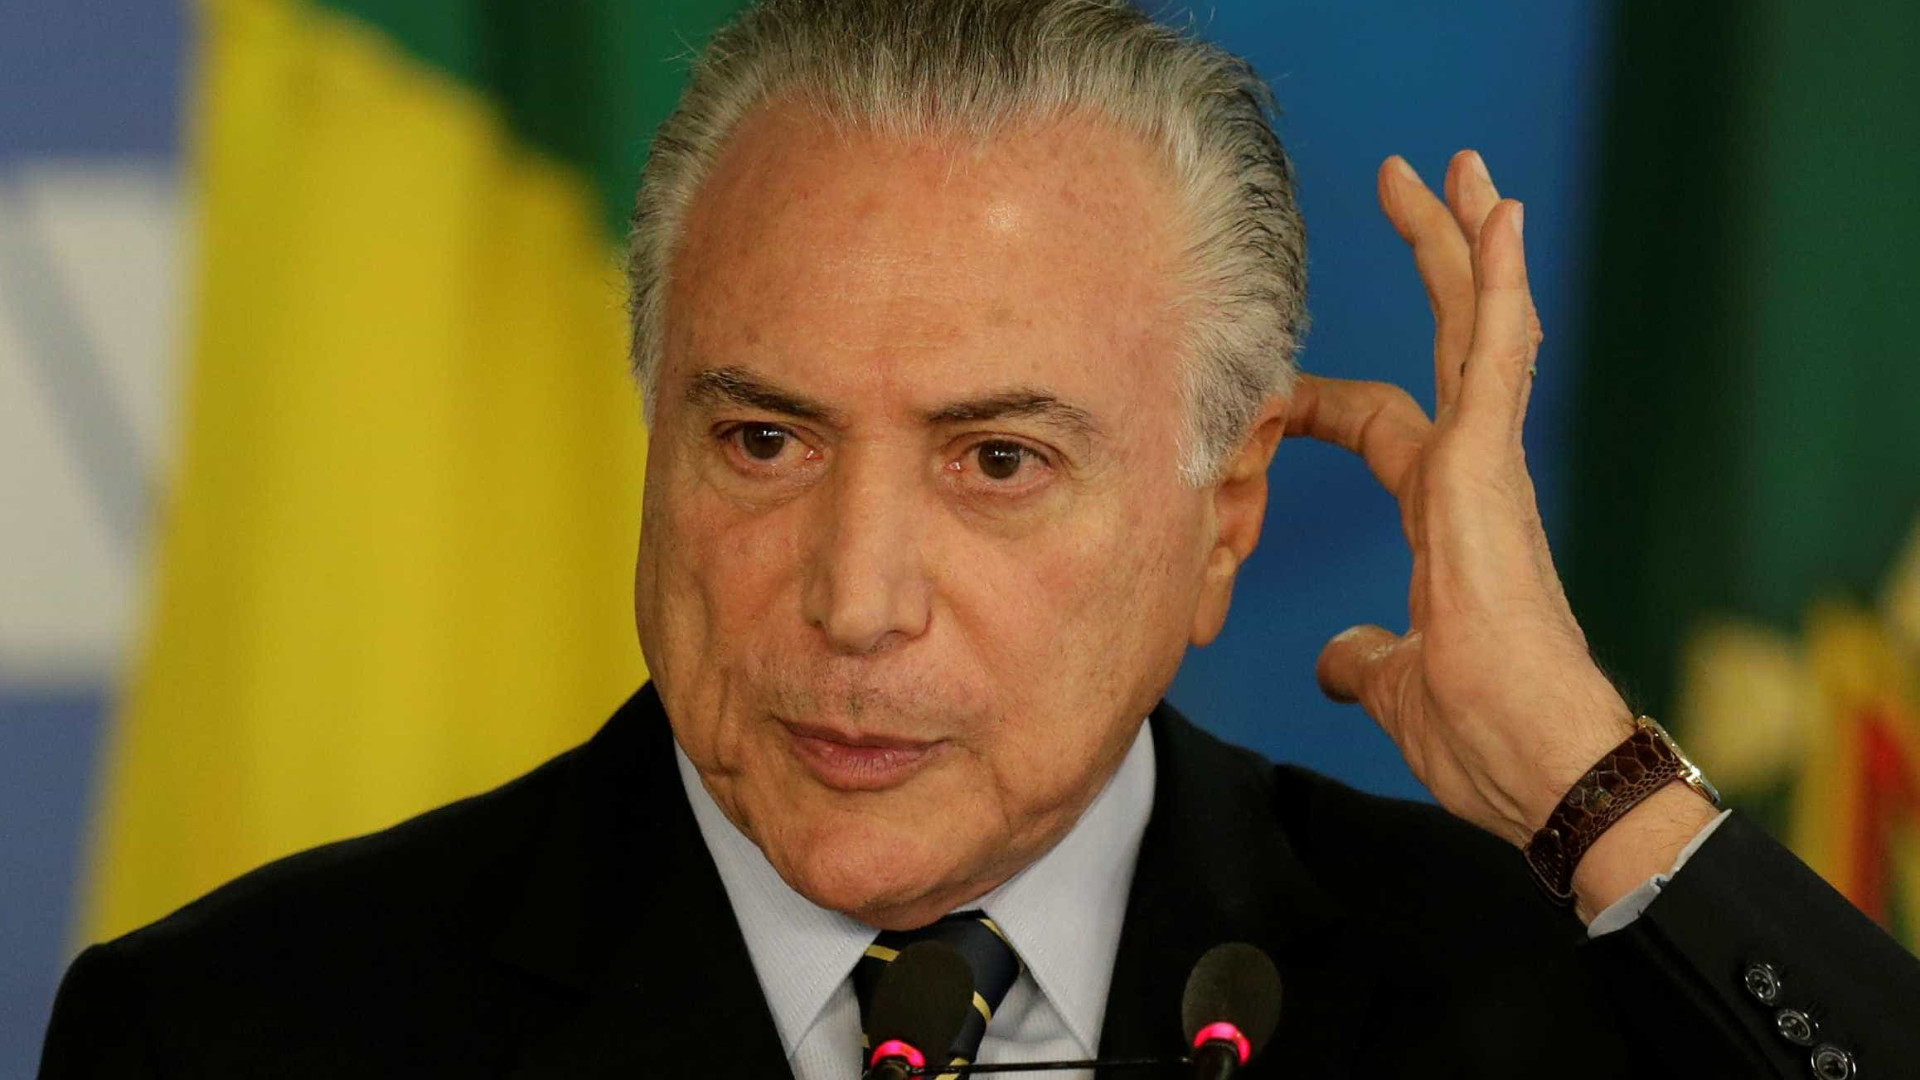 Ibope aponta que 86% dos brasileiros consideram governo Temer corrupto